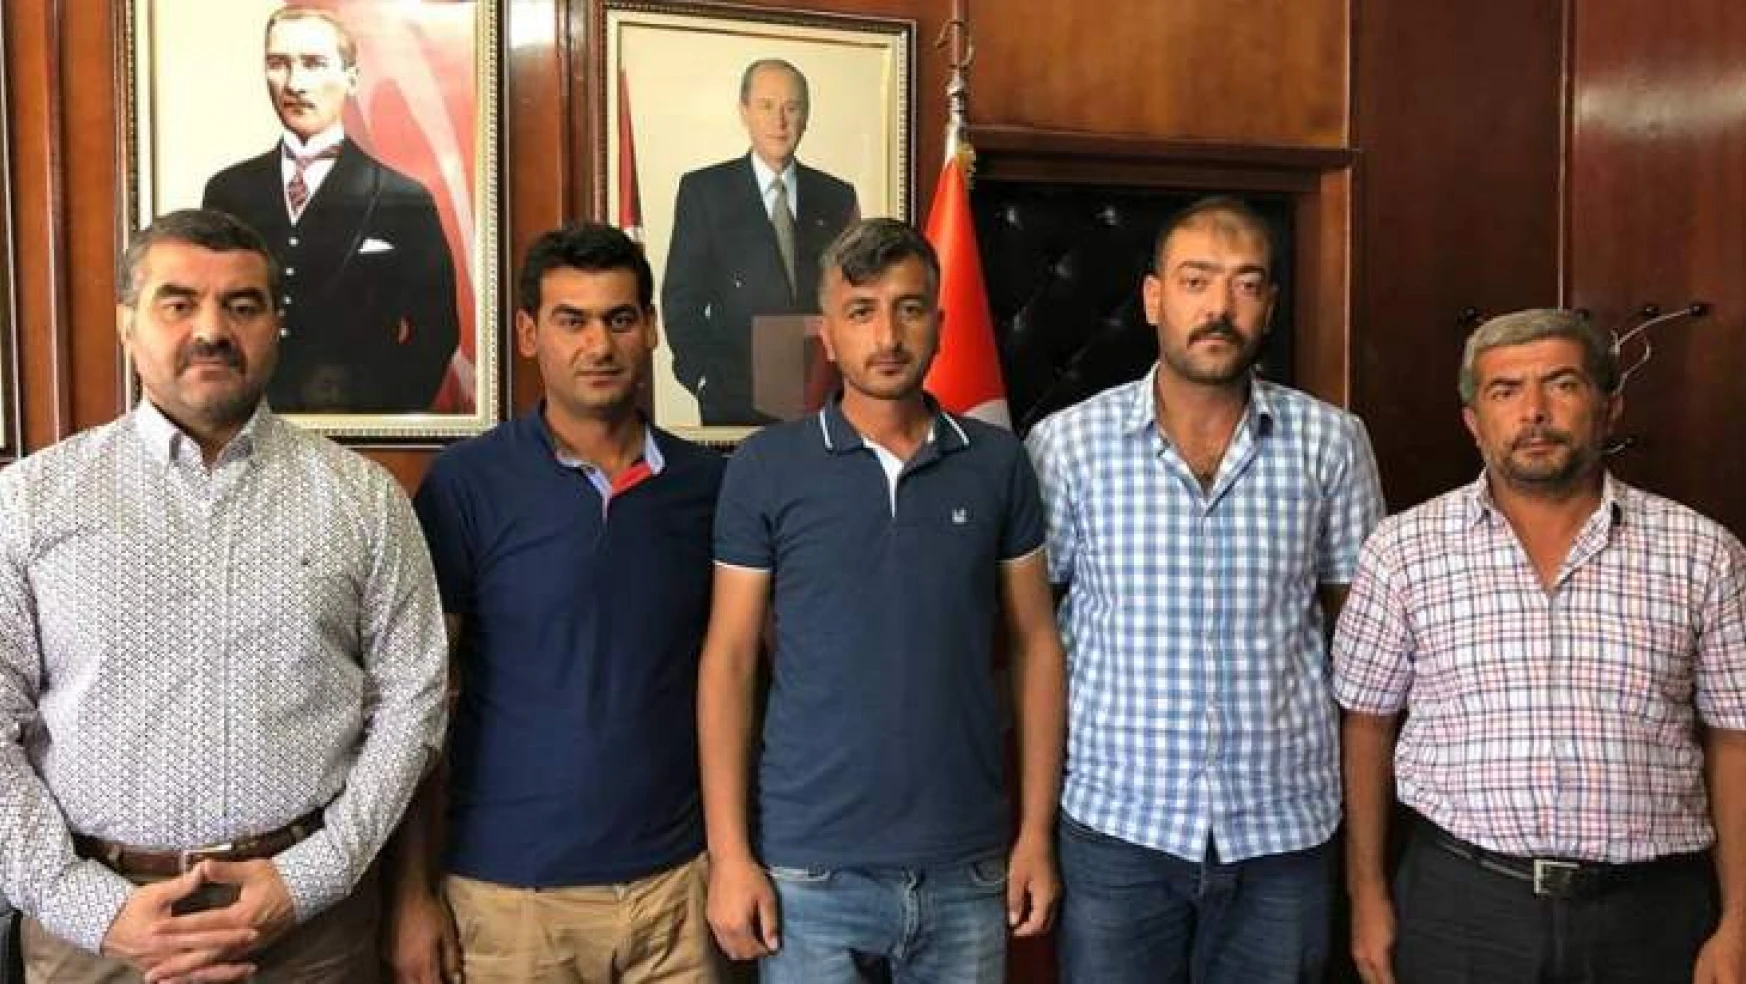 Avşar, 'MHP Kadroları Gerekeni Yapacaktır'